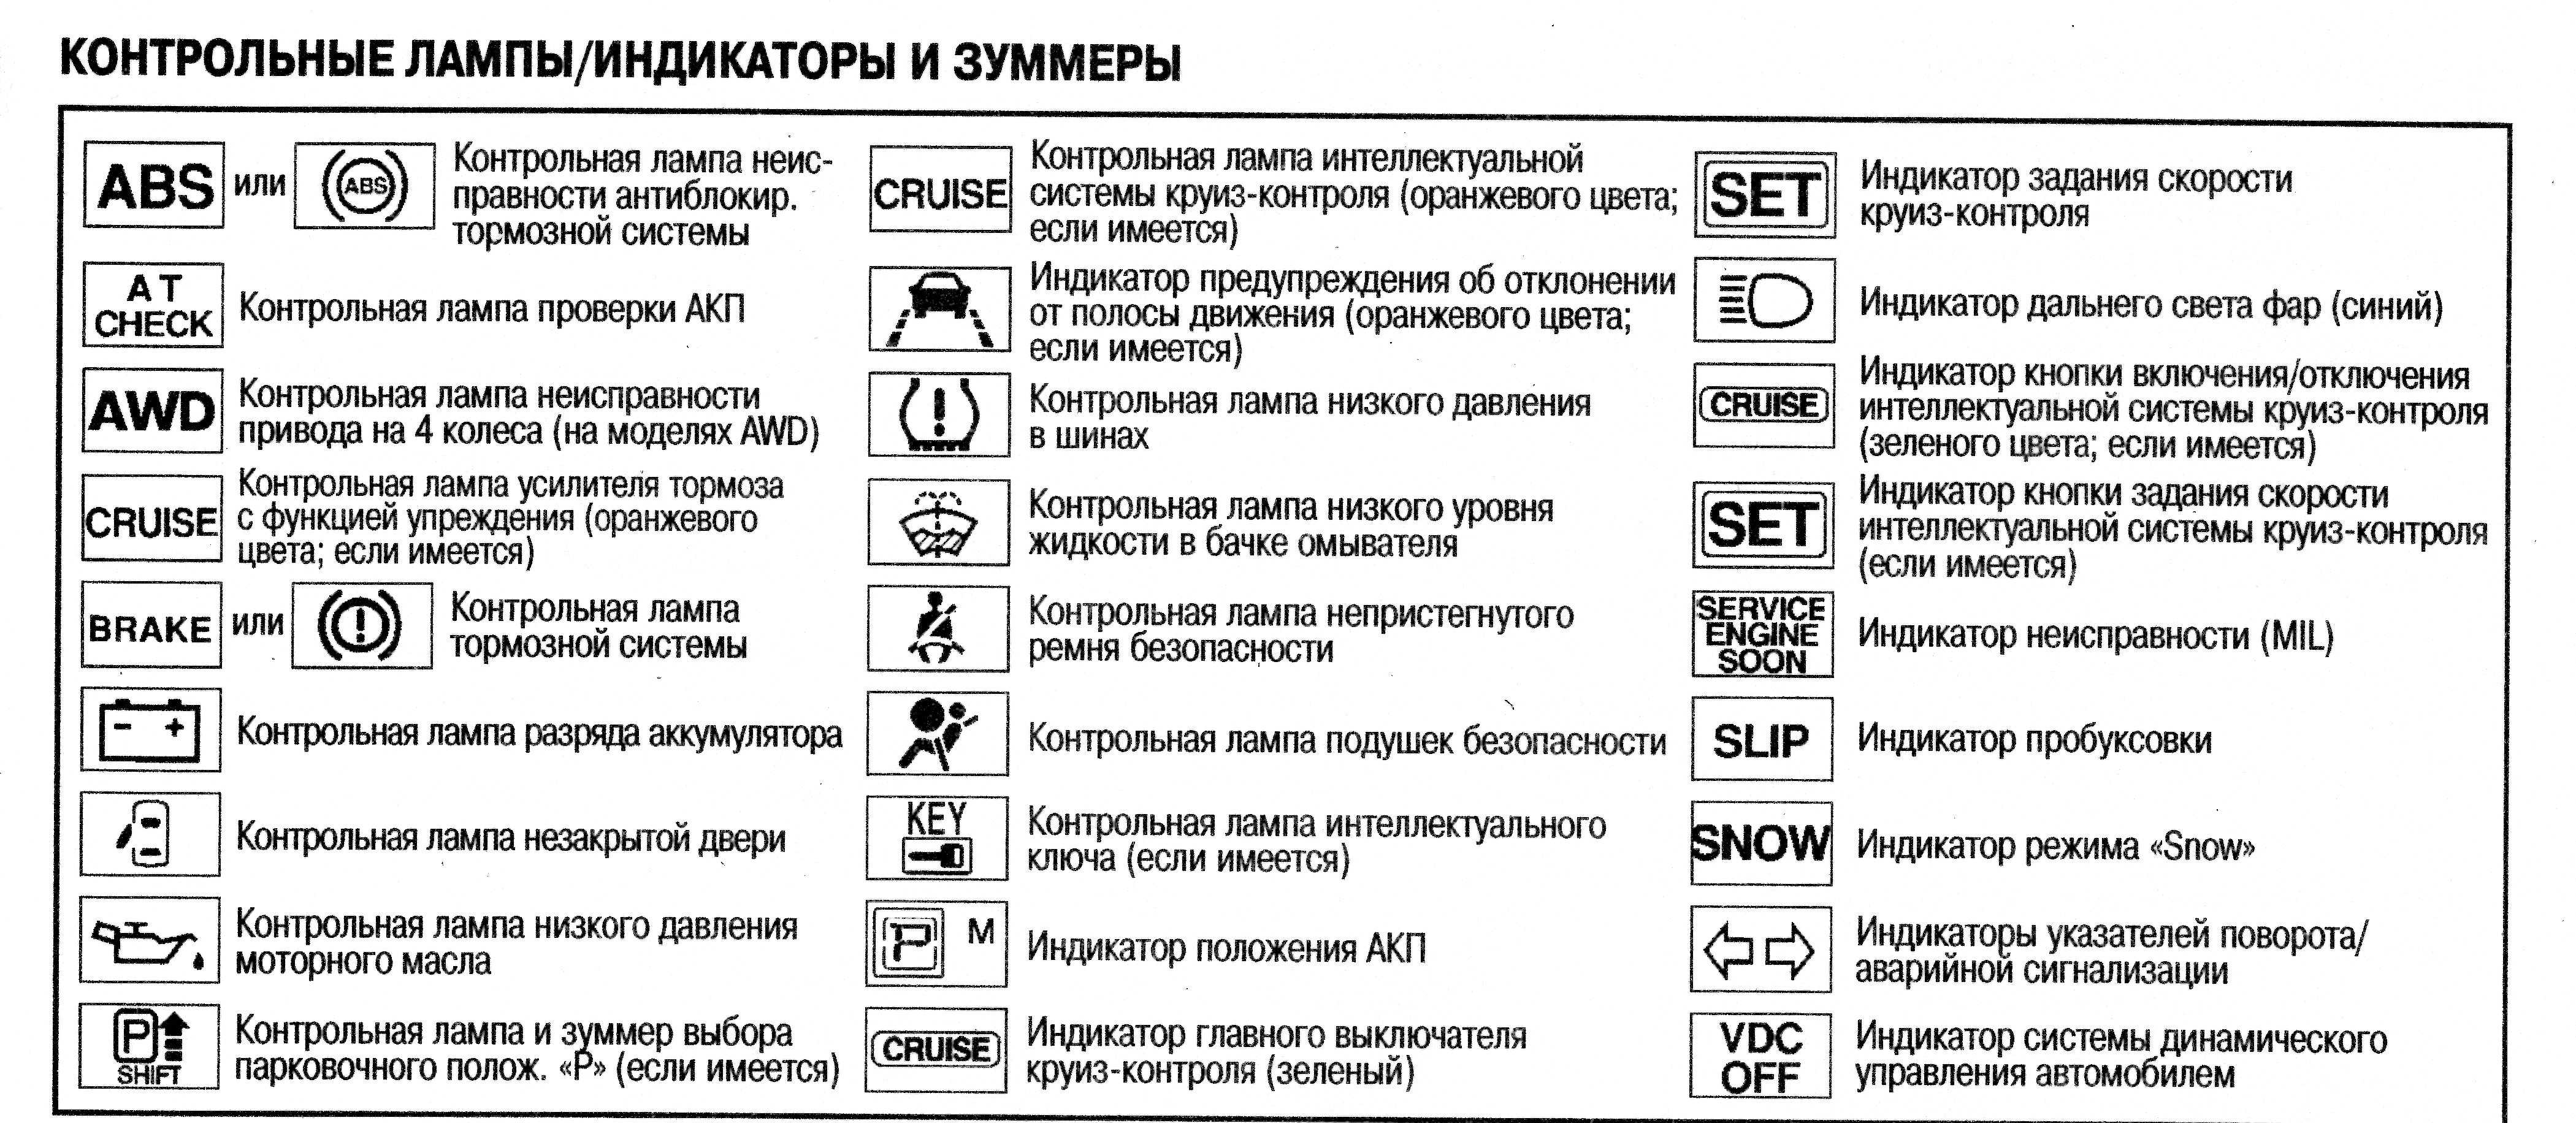 Катушка зажигания митсубиси лансер 9: где находится элемент и пошаговая инструкция для замены своими руками, рекомендации по техническому обслуживанию и отзывы zil-avto.ru